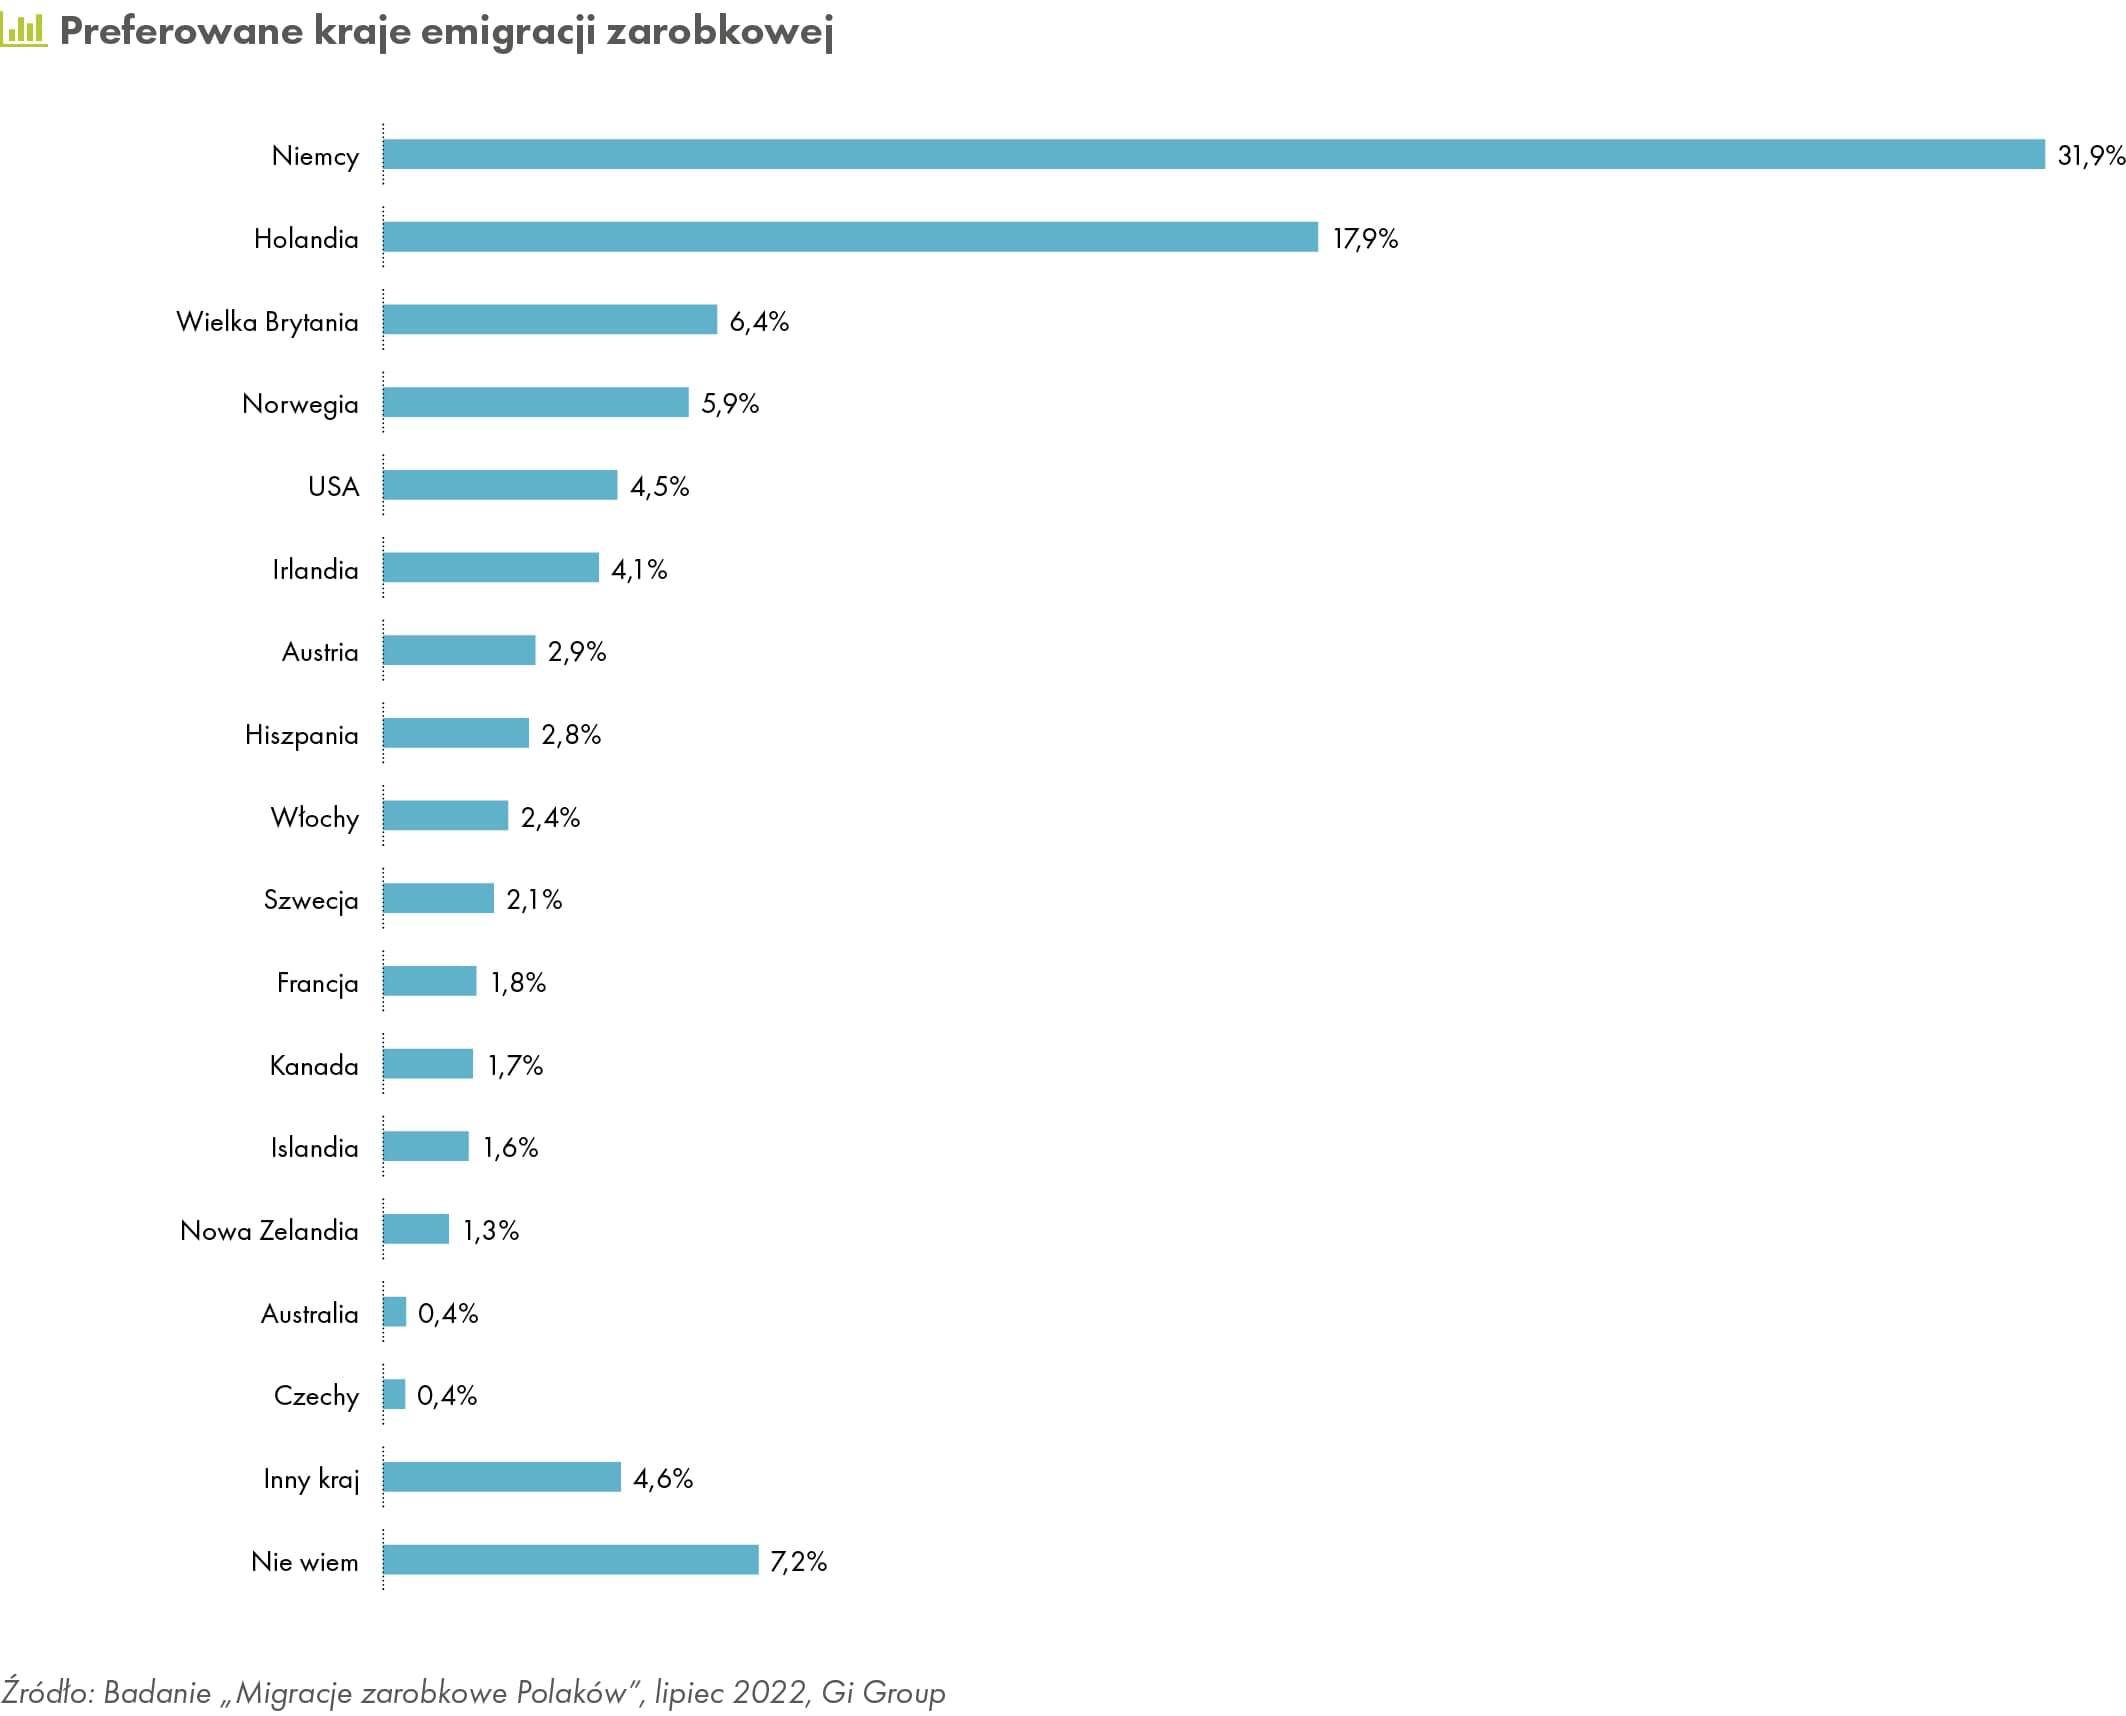 Preferowane kraje emigracji zarobkowej (źródło: GI Group)